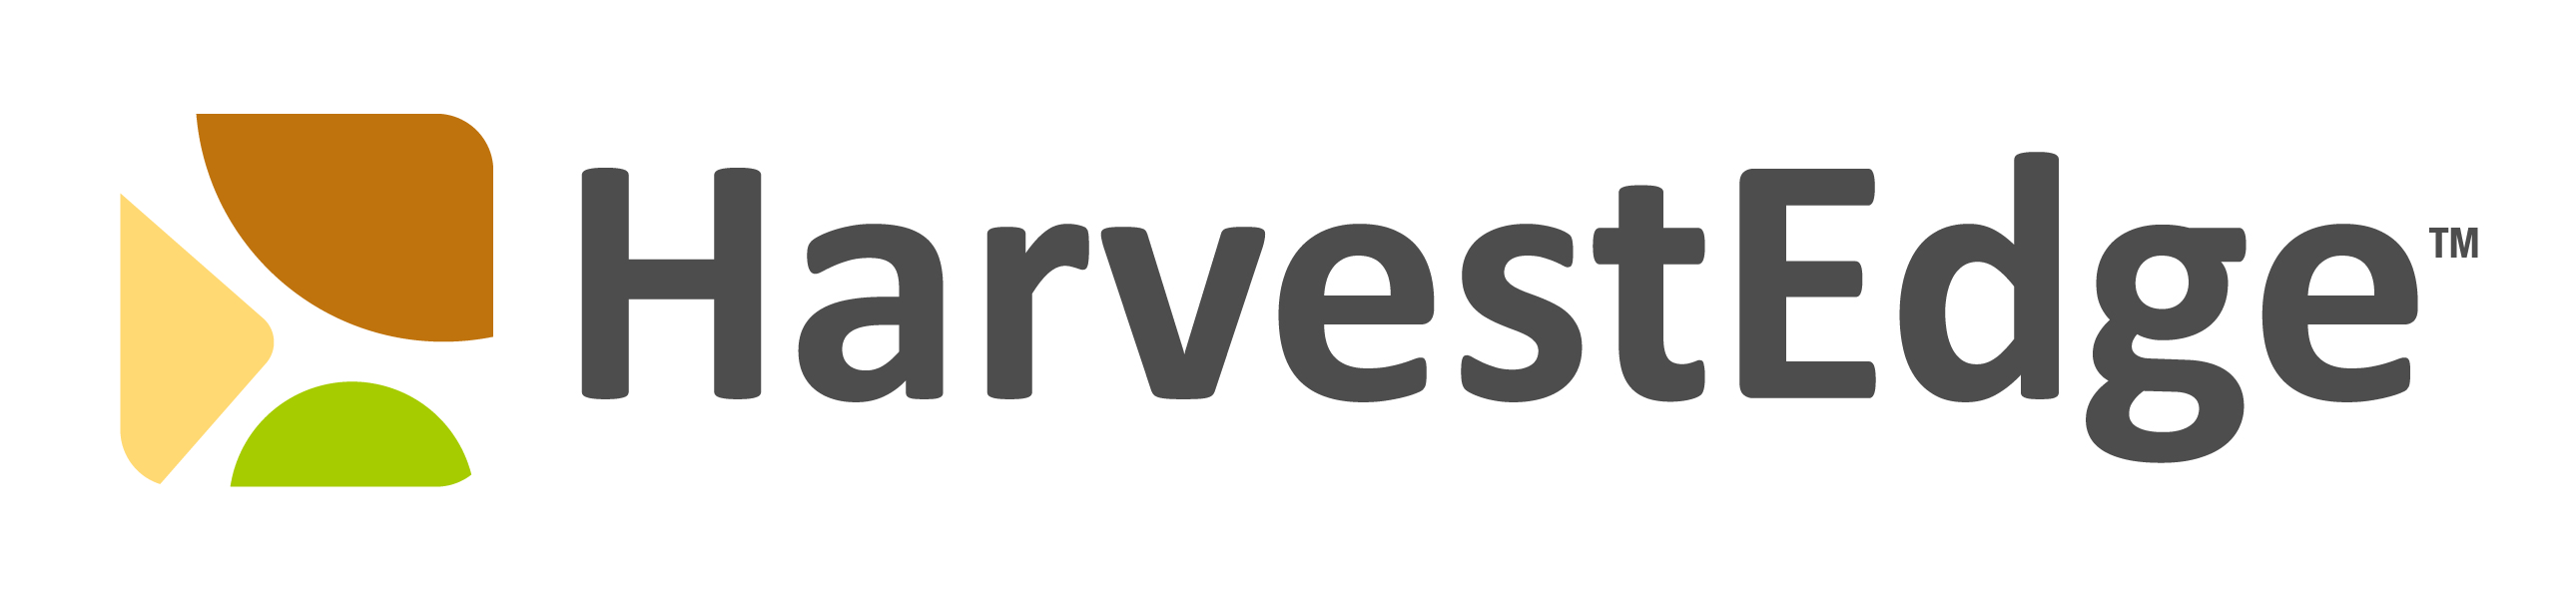 HarvestEdge brand logo